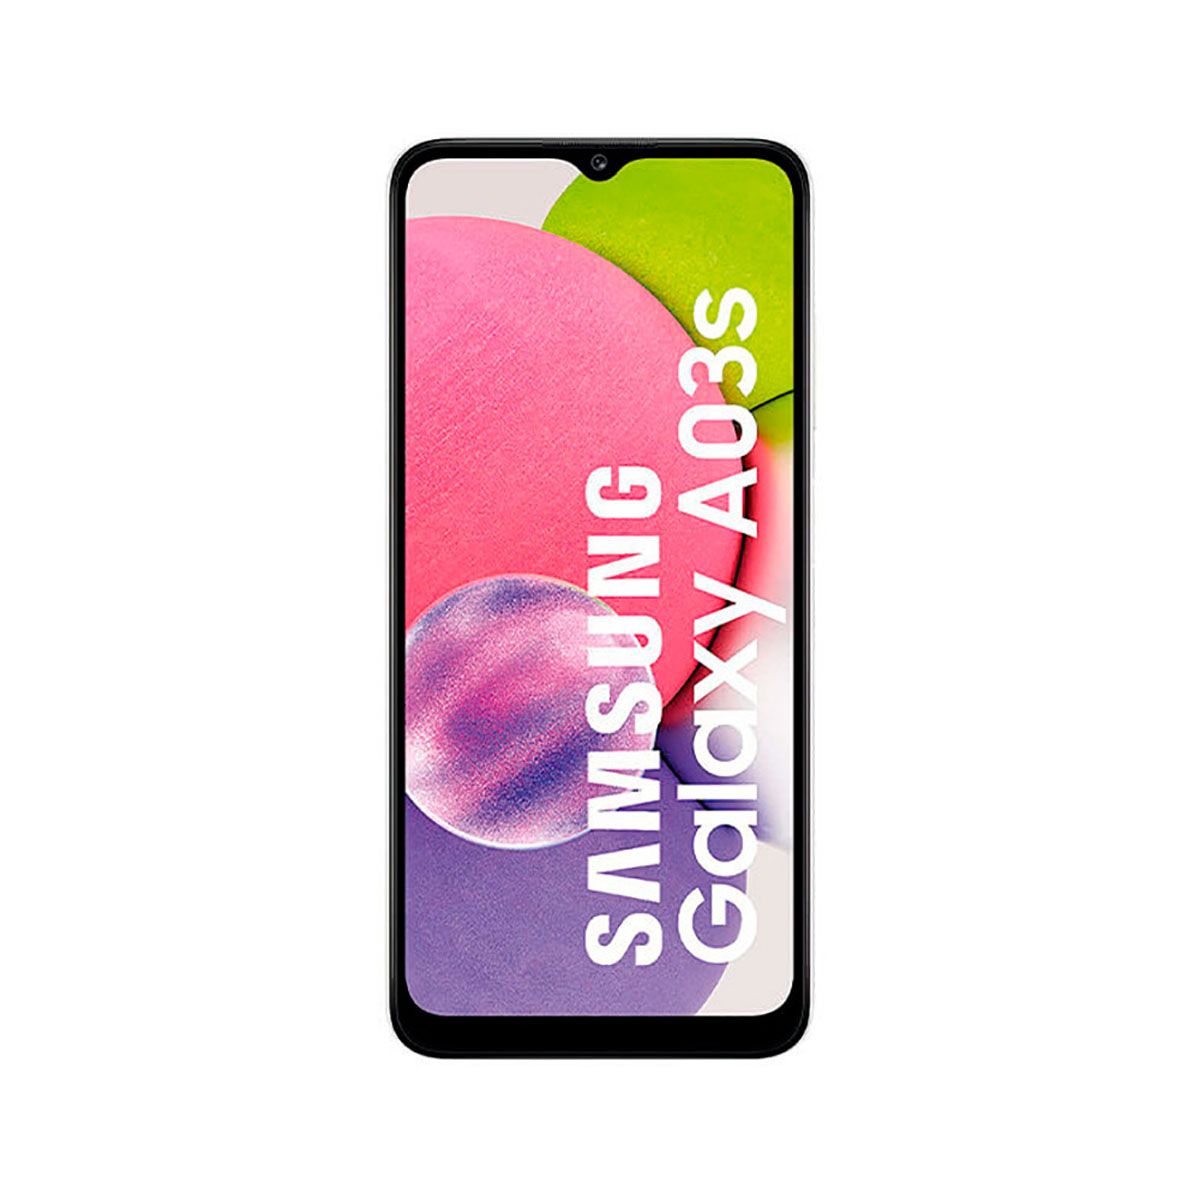 Samsung Galaxy A03s 3 Go/32 Go Noir (Noir) Double SIM SM-A037